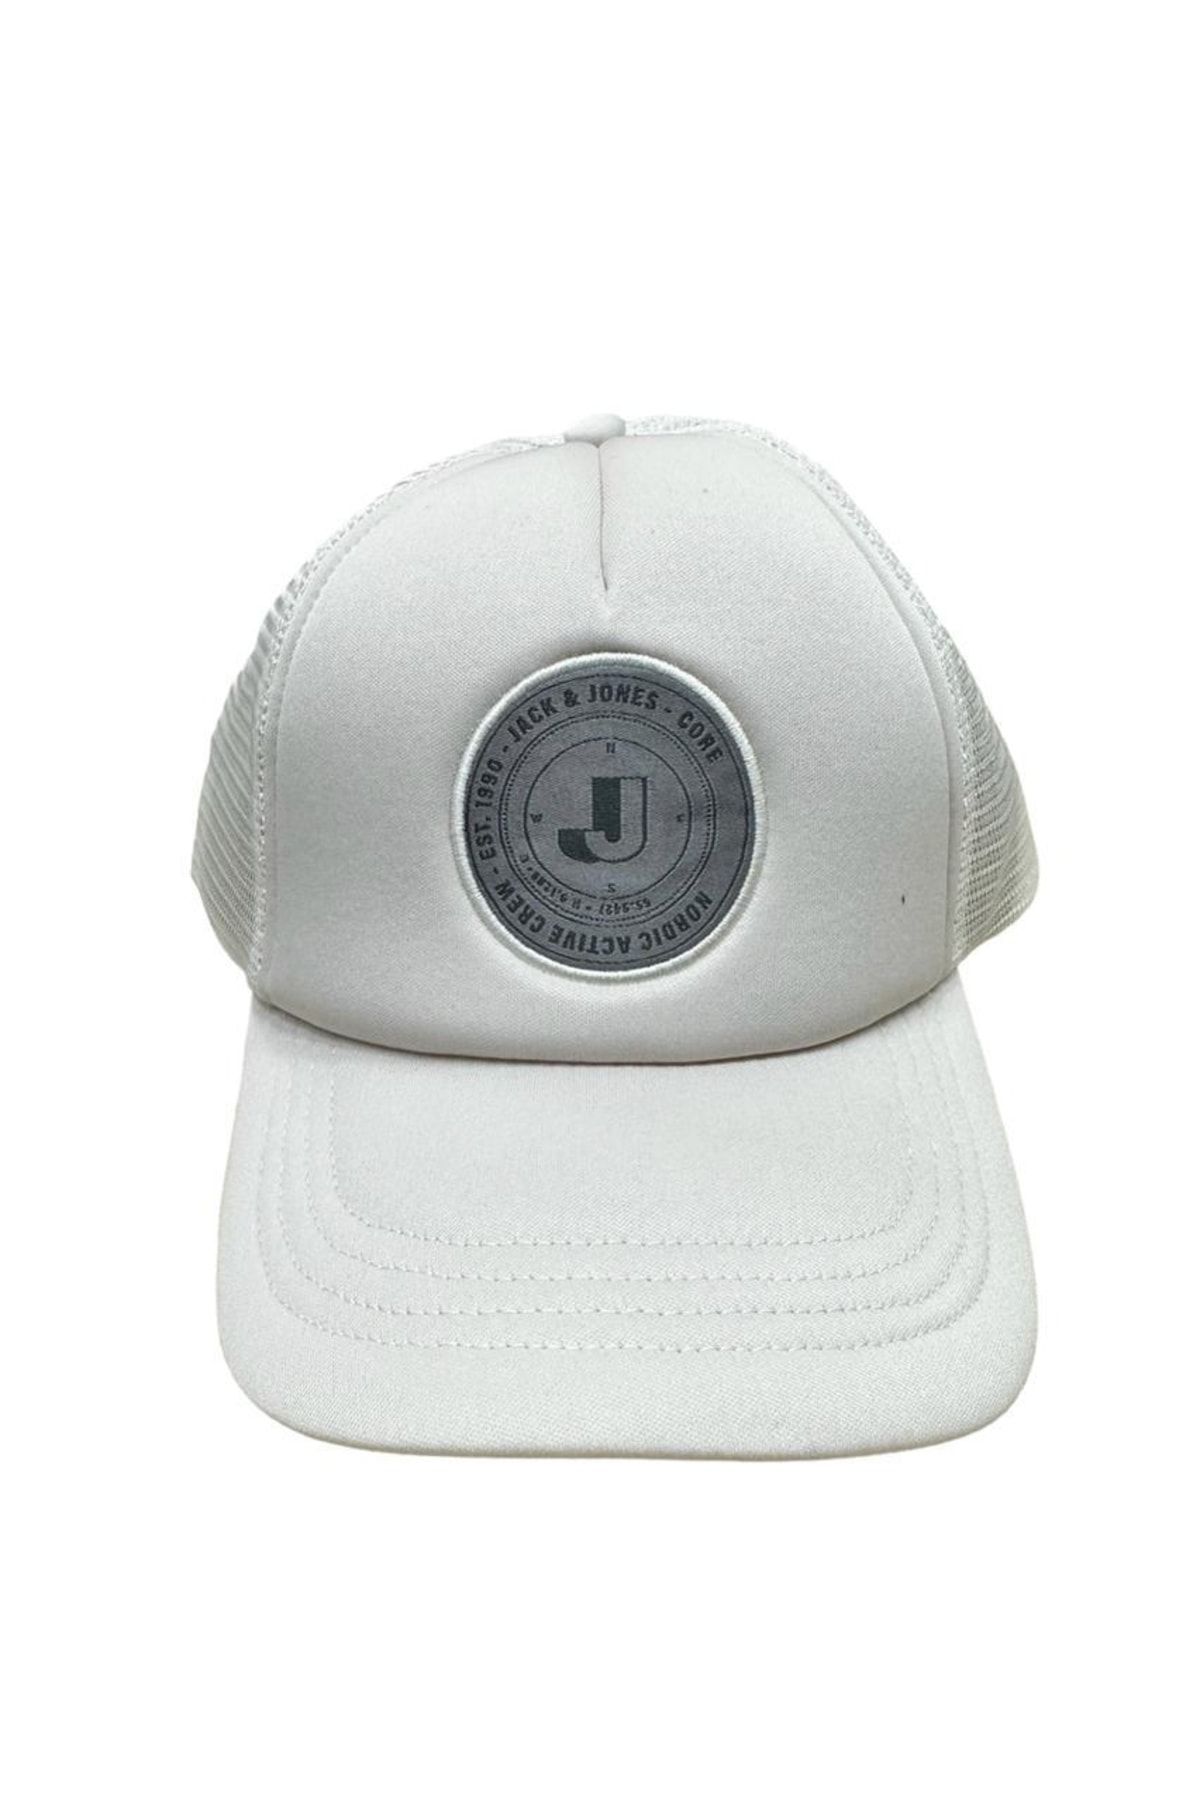 Jack & Jones Jack Jones Vıbes Trucker Cap Erkek Beyaz Şapka 12235601-01